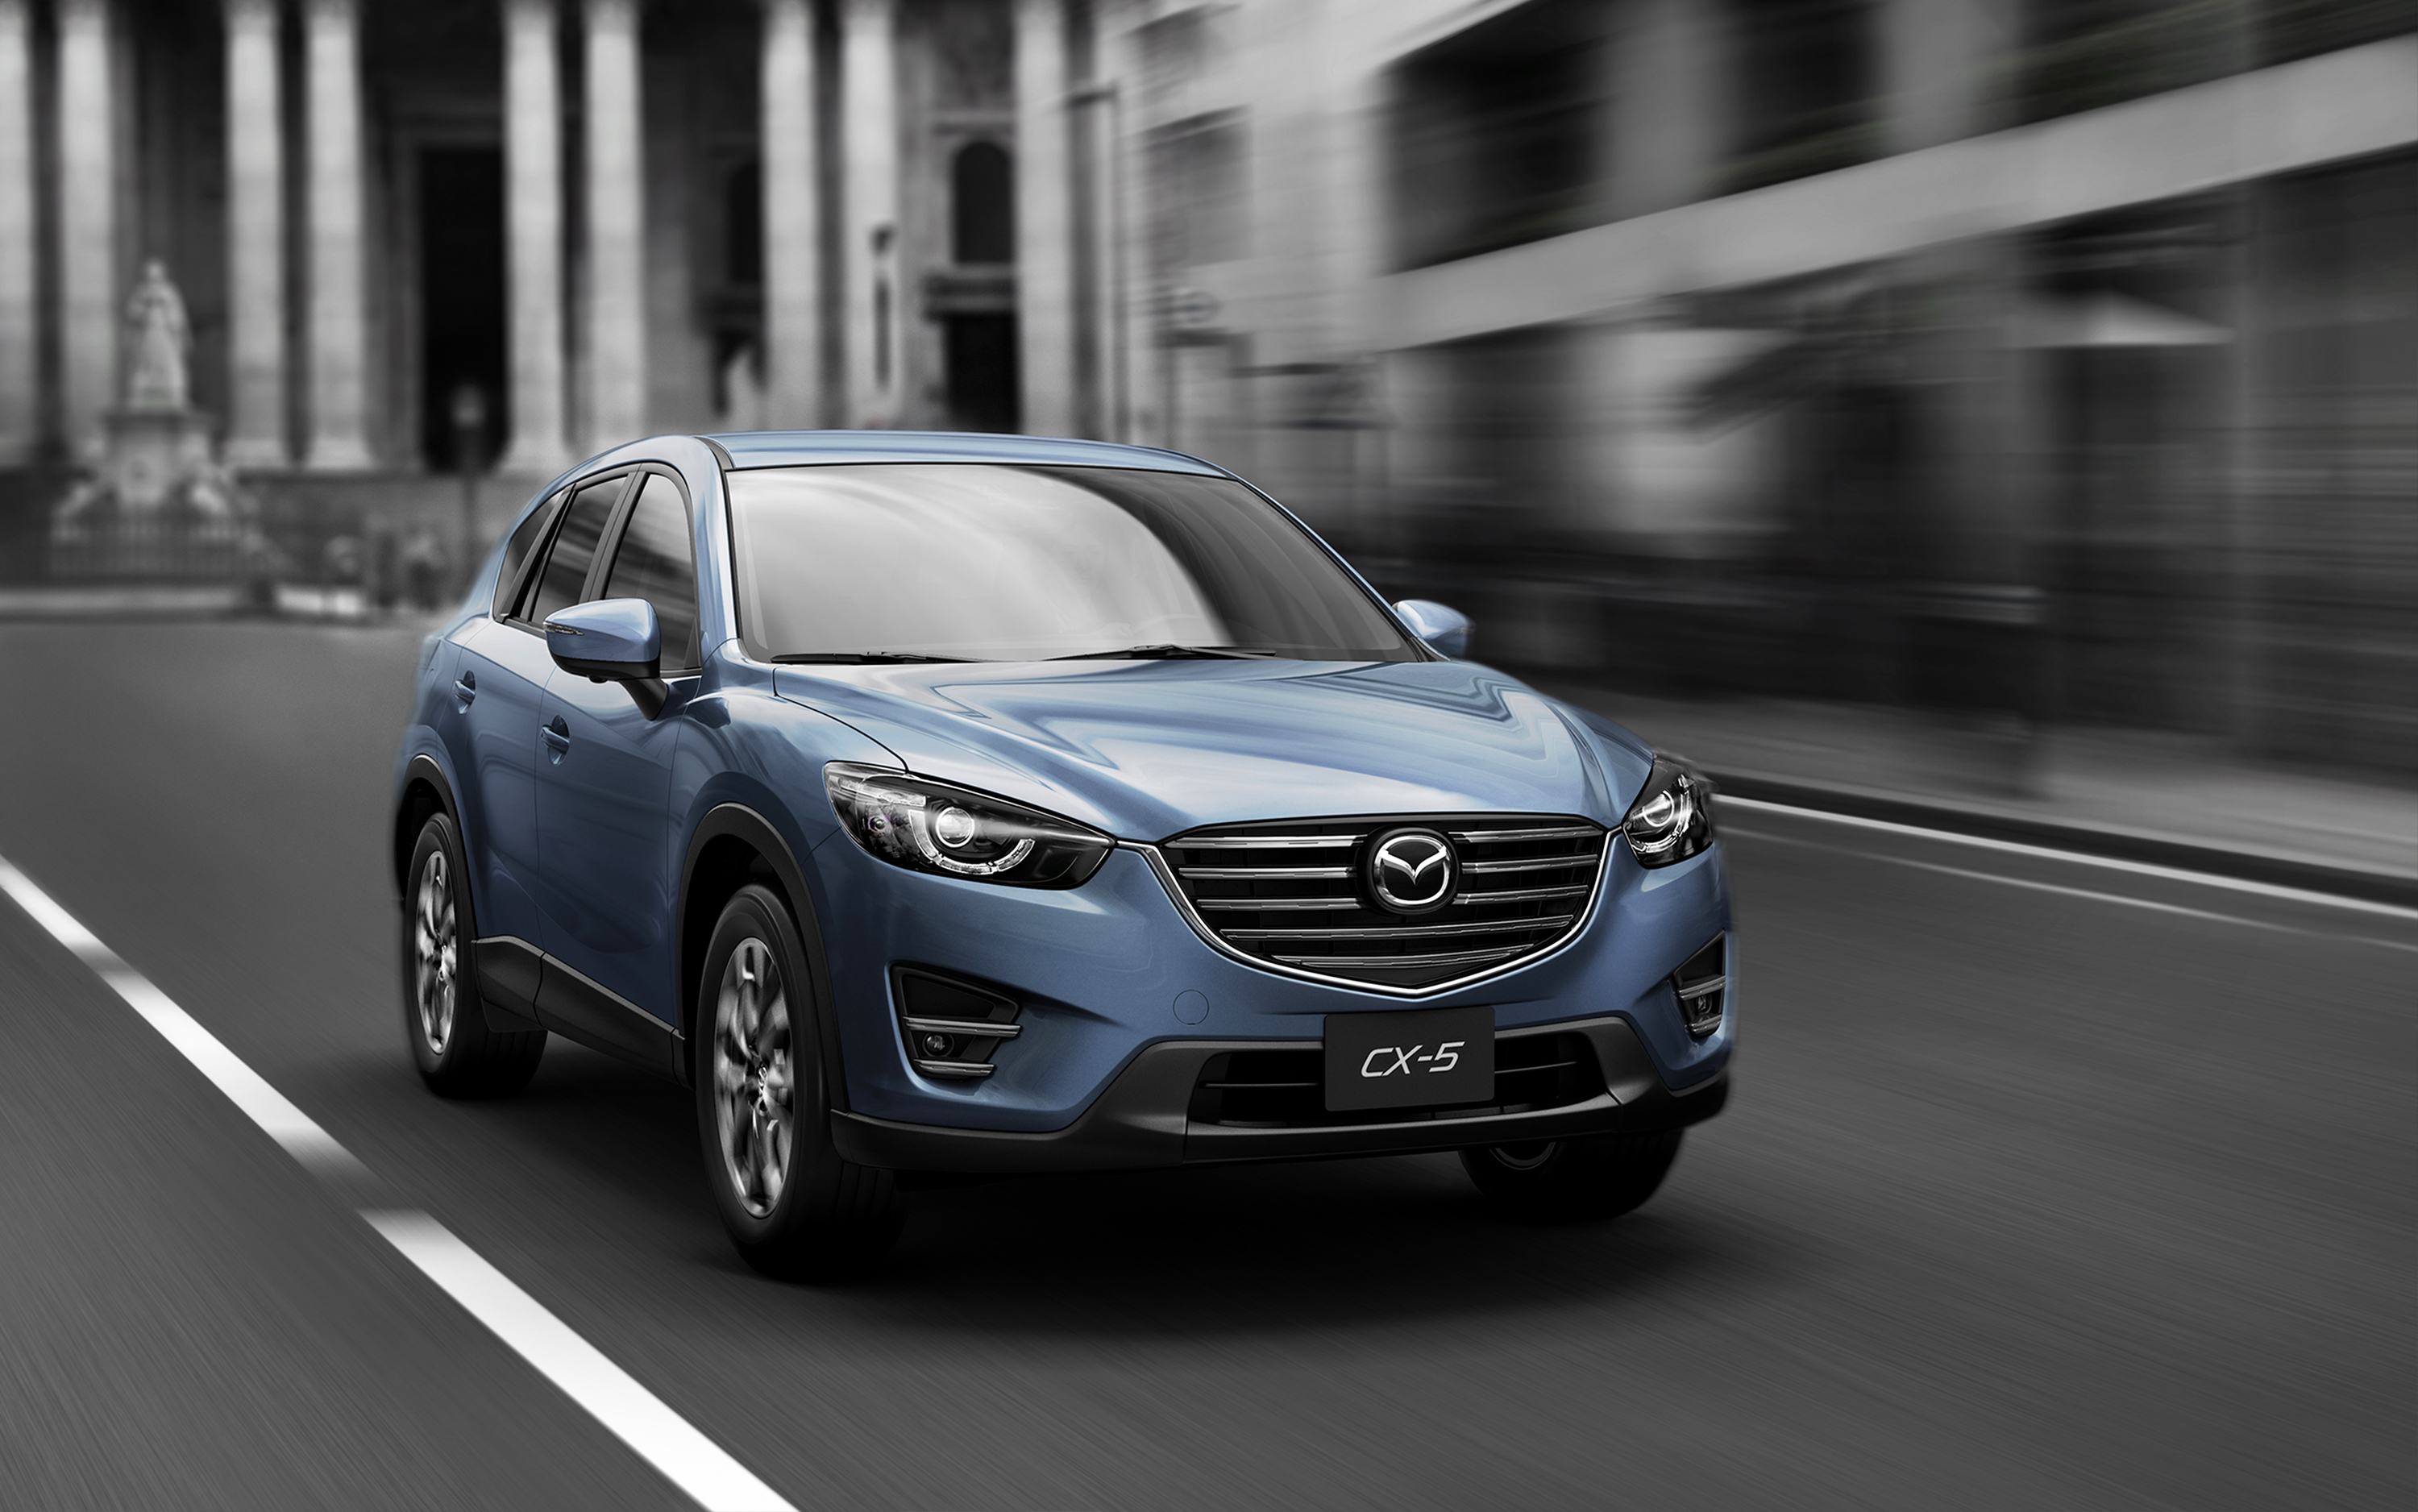 Giá xe Mazda cập nhật mới nhất: BT-50 được điều chỉnh giảm giá